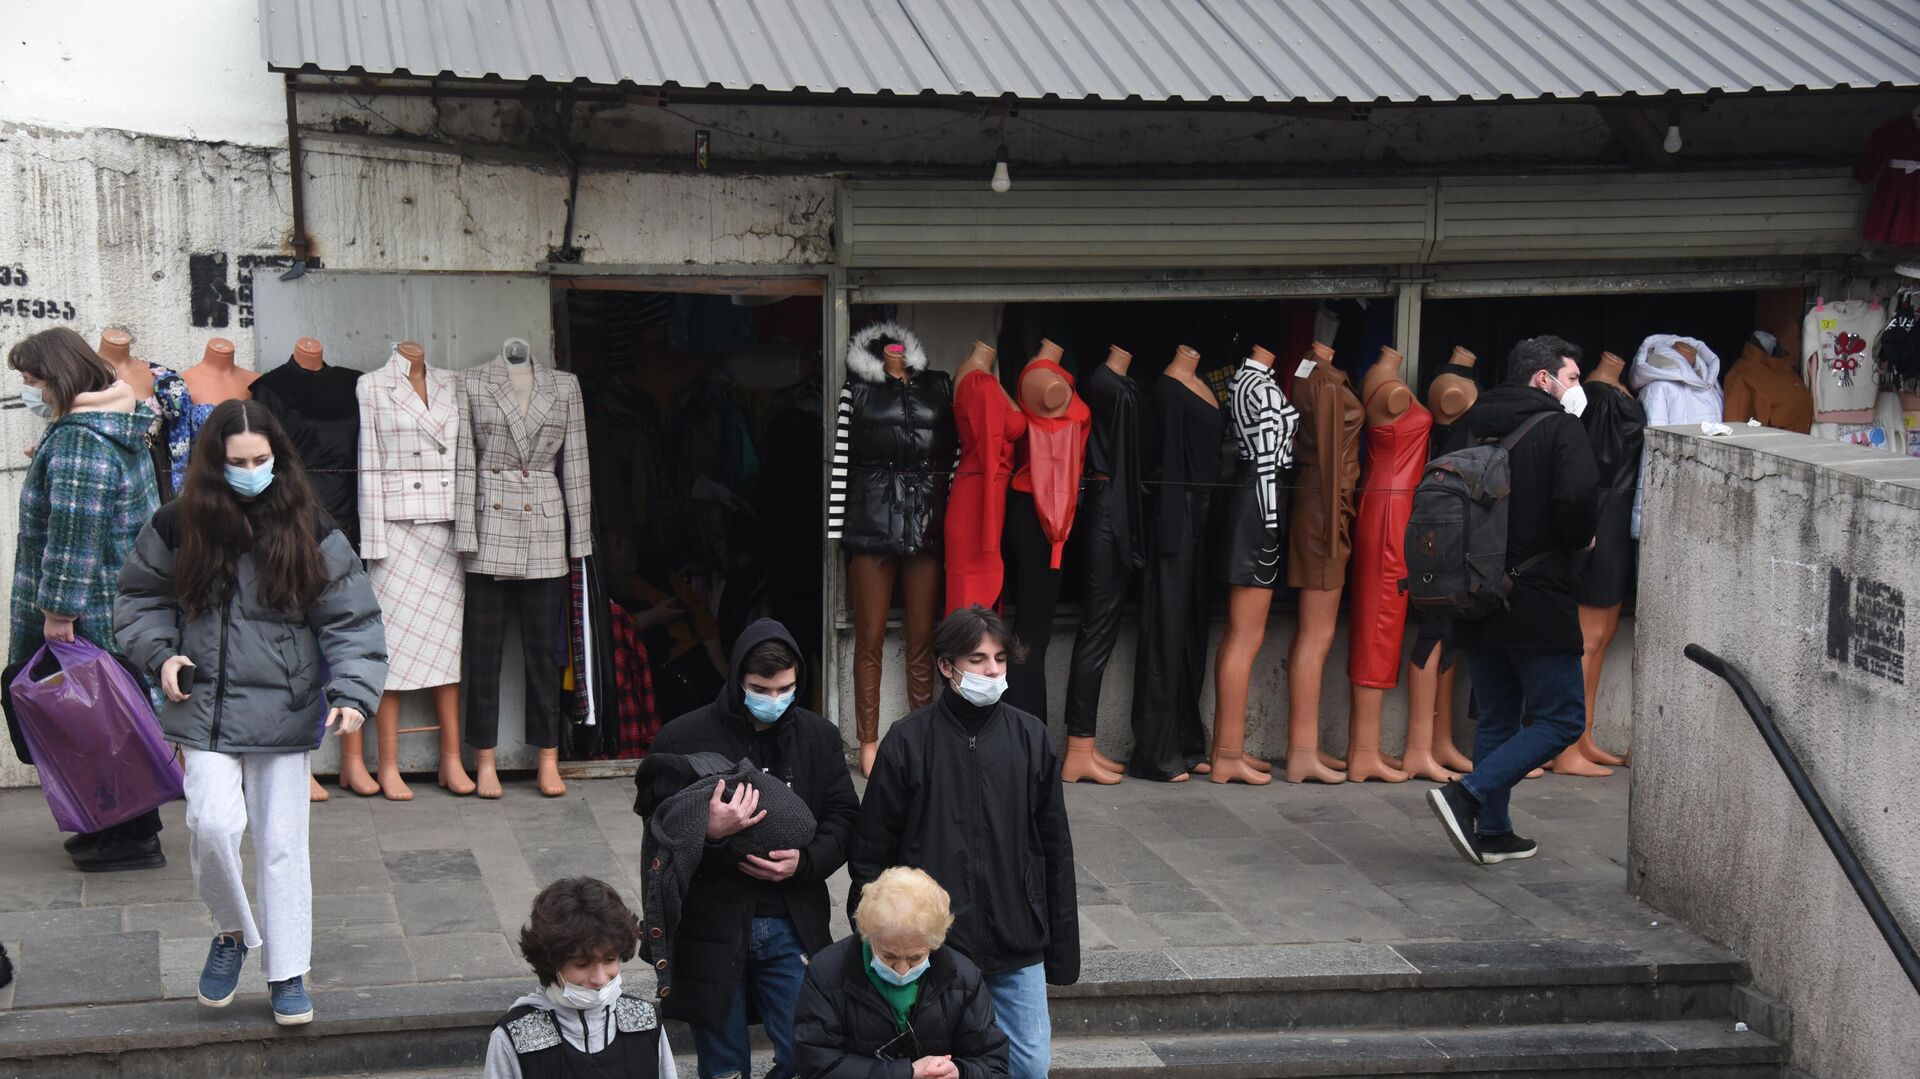 Магазины с одеждой, манекены и прохожие в масках во время эпидемии коронавируса - Sputnik Грузия, 1920, 06.04.2022